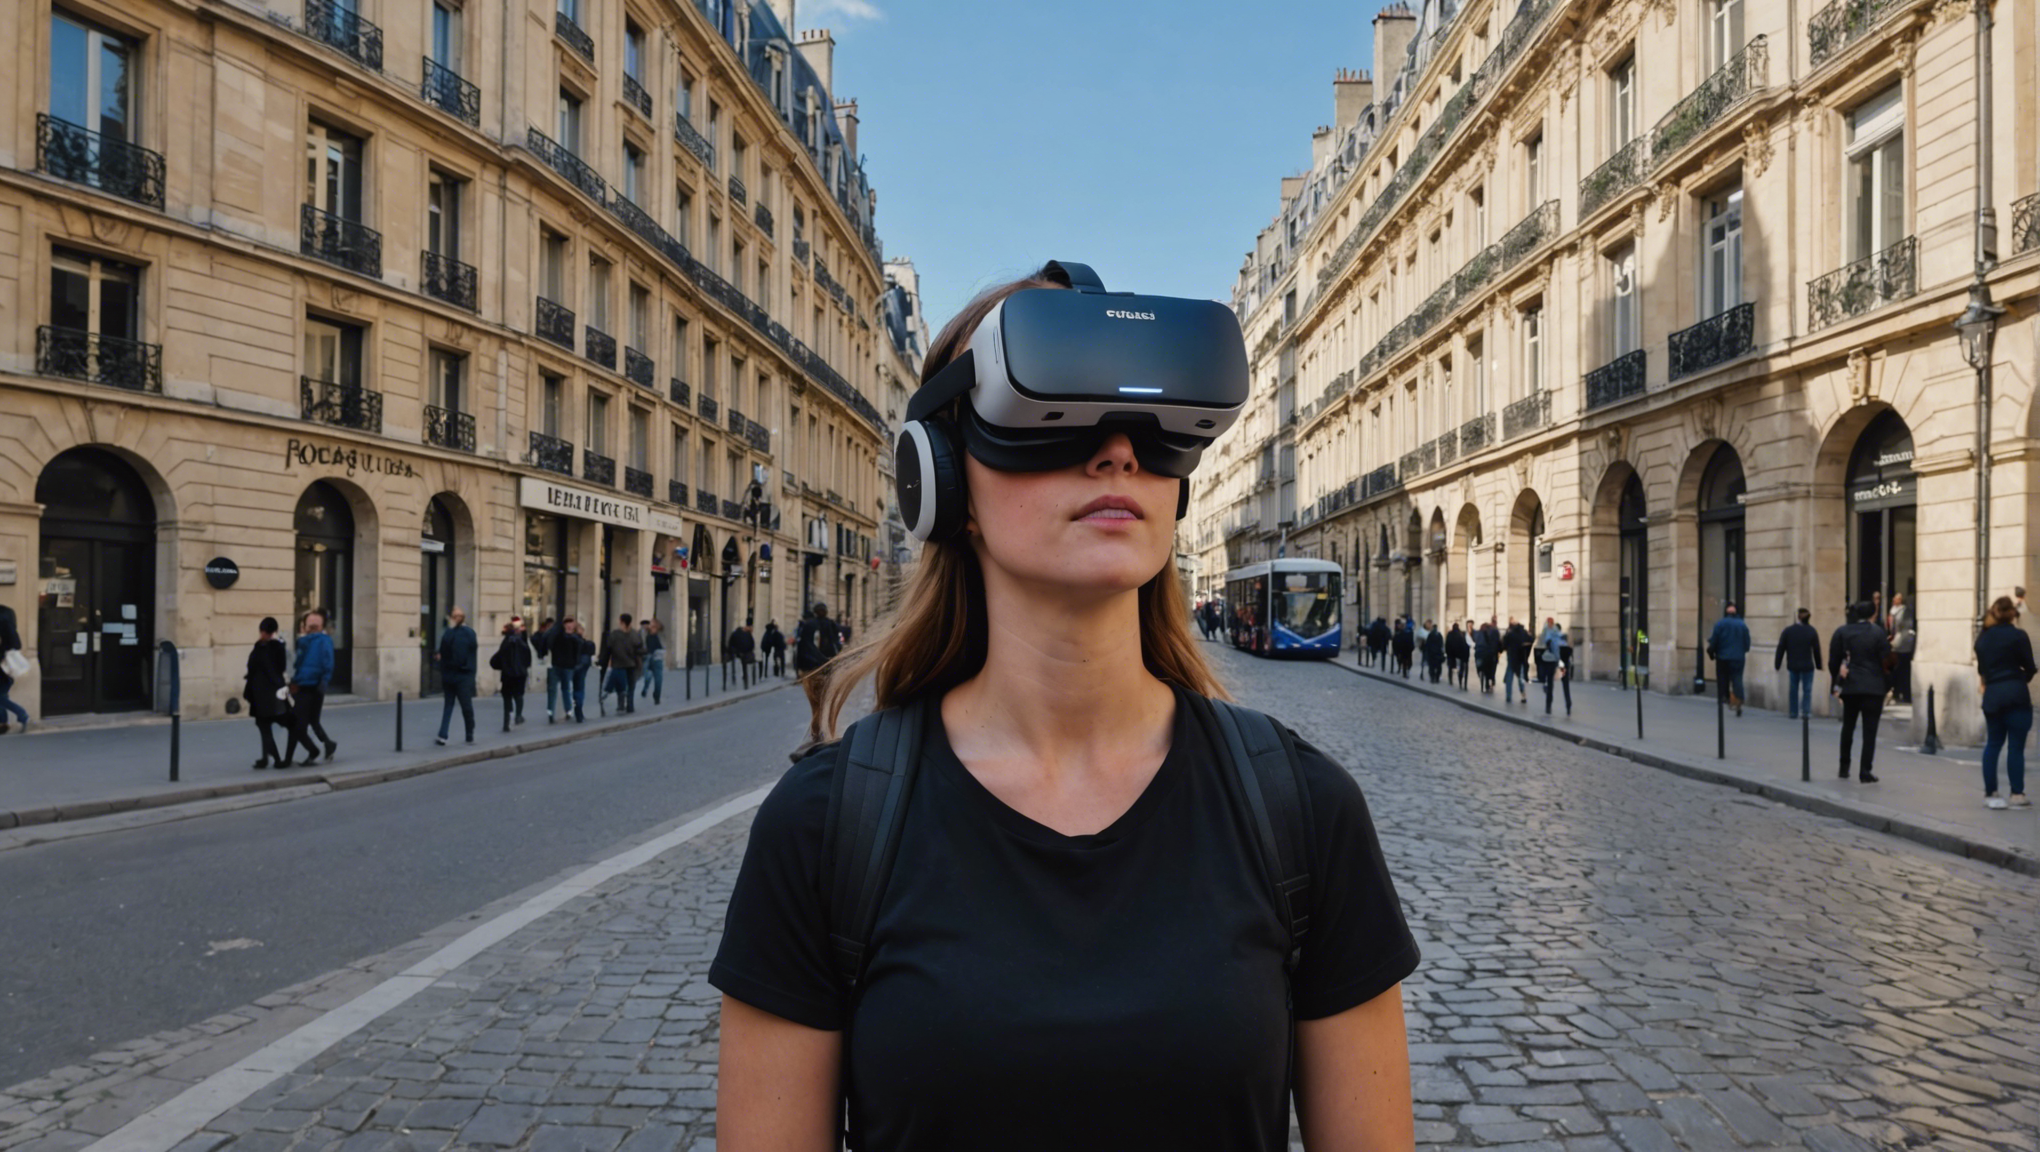 transformez vos réunions parisiennes avec notre simulateur de réalité virtuelle en location pour une expérience immersive inédite ! louez dès maintenant et offrez à vos collaborateurs un moment unique de collaboration et de découverte.